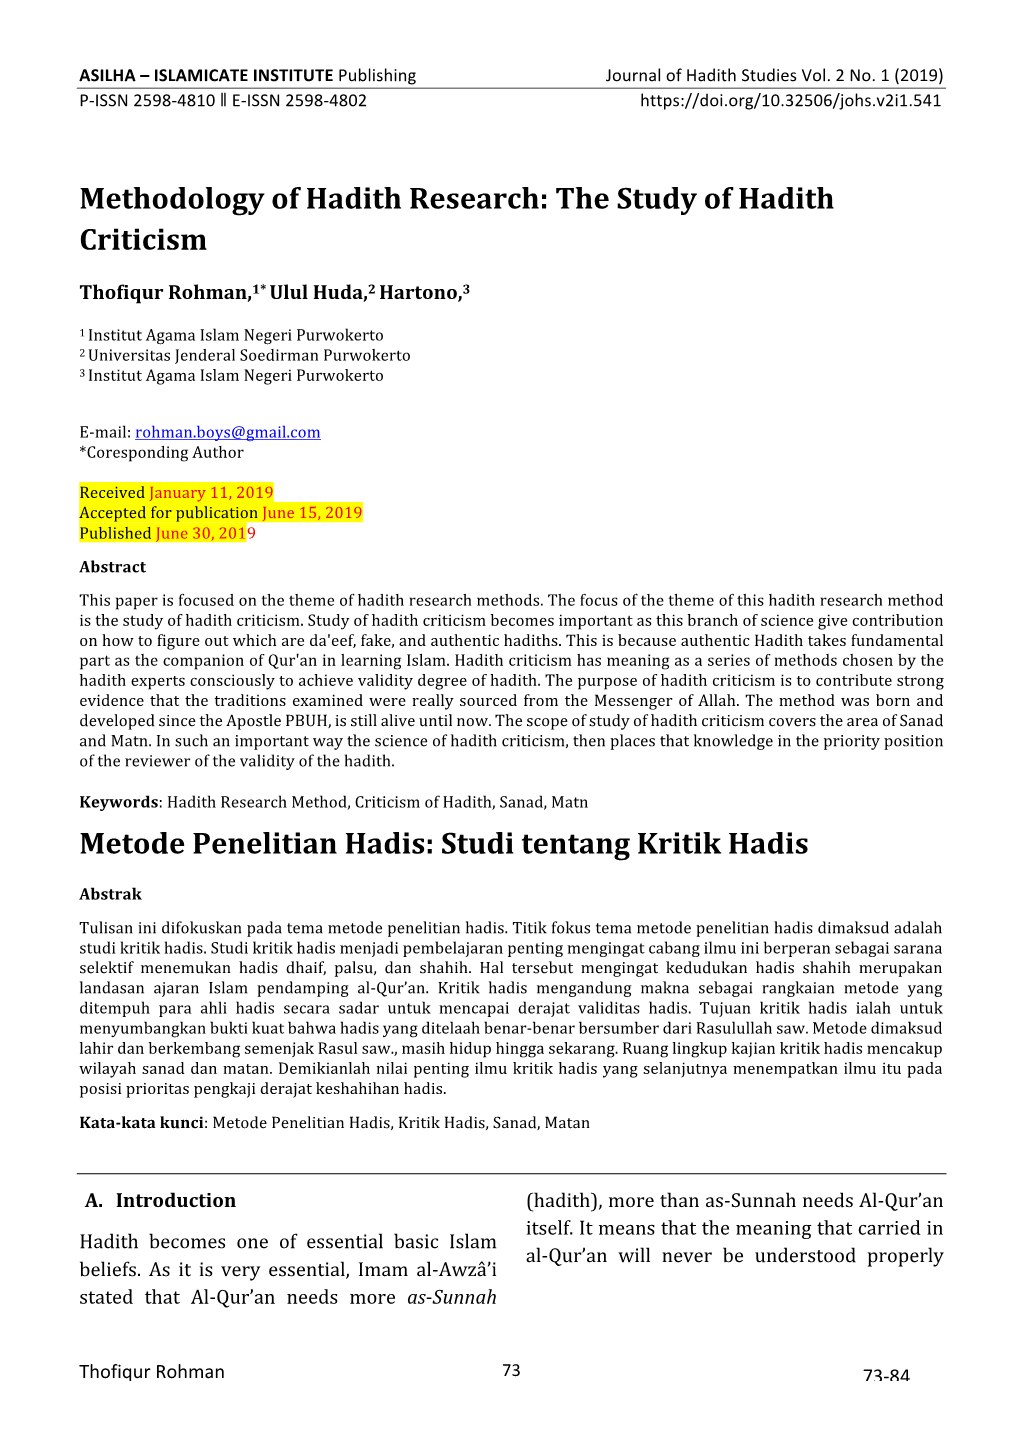 Methodology of Hadith Research: the Study of Hadith Criticism Metode Penelitian Hadis